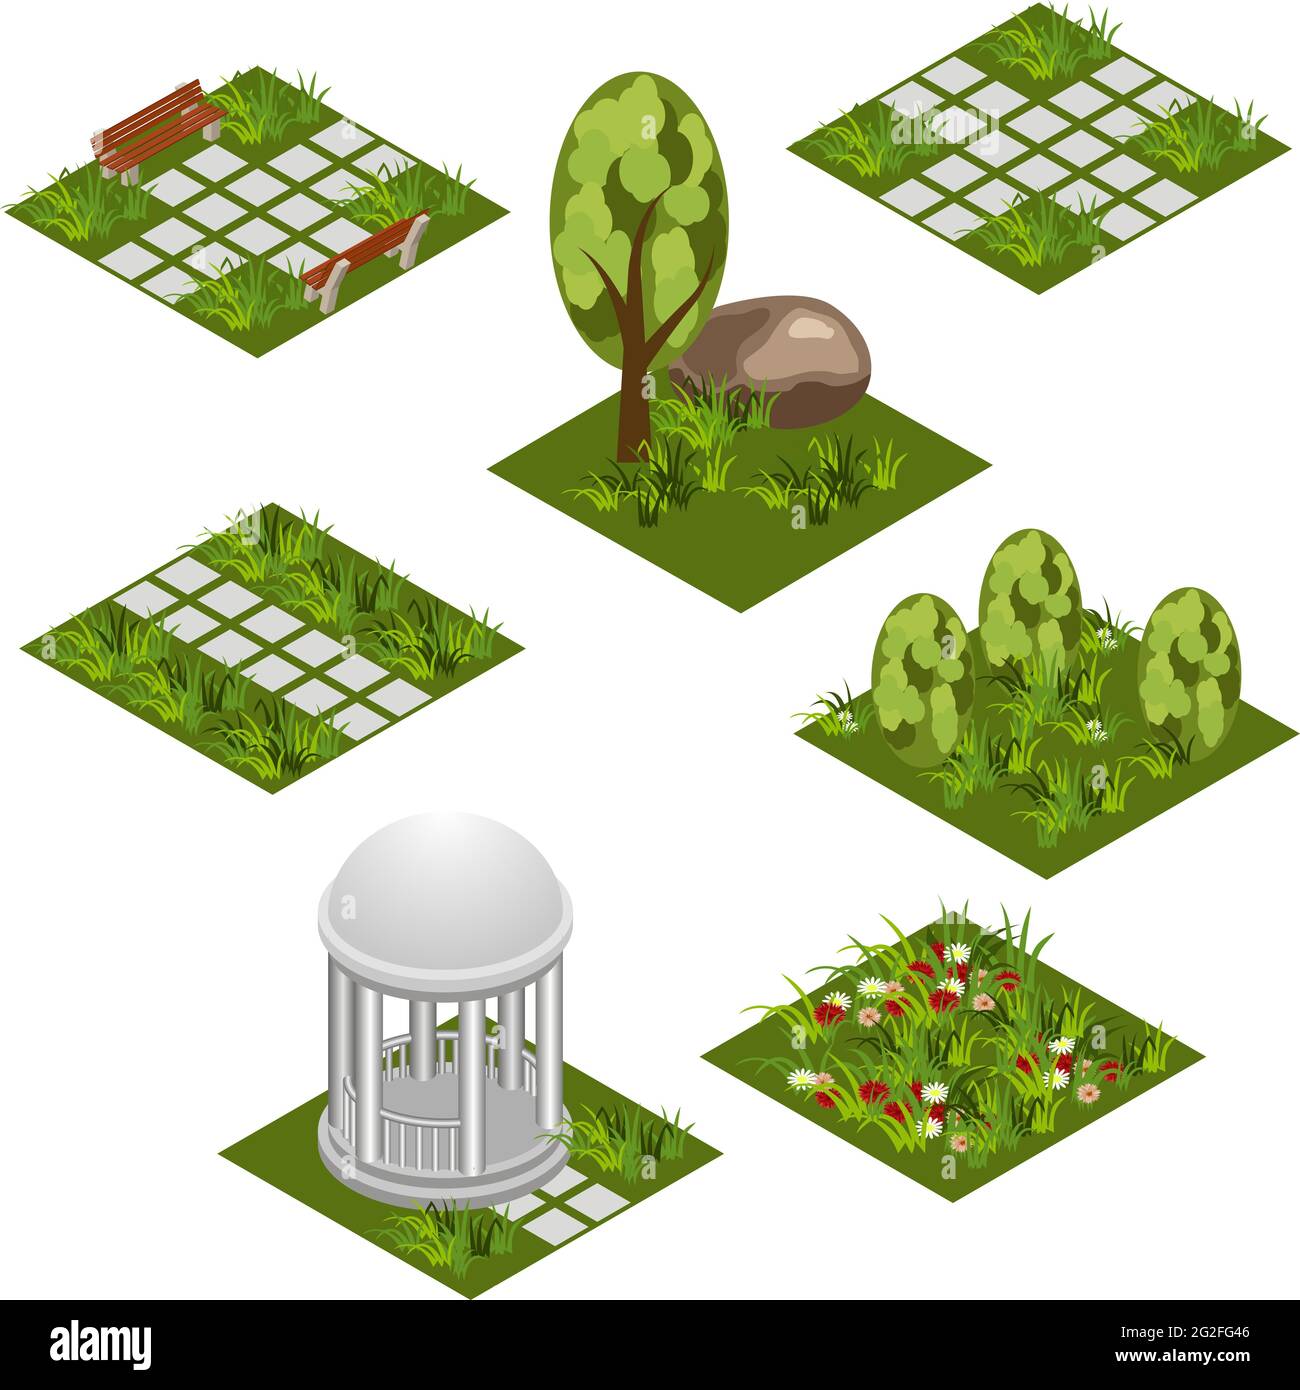 Garten isometrisches Fliesenset. Isolierte isometrische Fliesen zur Gestaltung der Gartenlandschaft. Cartoon- oder Spielanlage mit Gras, Bäumen, Blumen, gepflasterten Spaziergängen, Stock Vektor